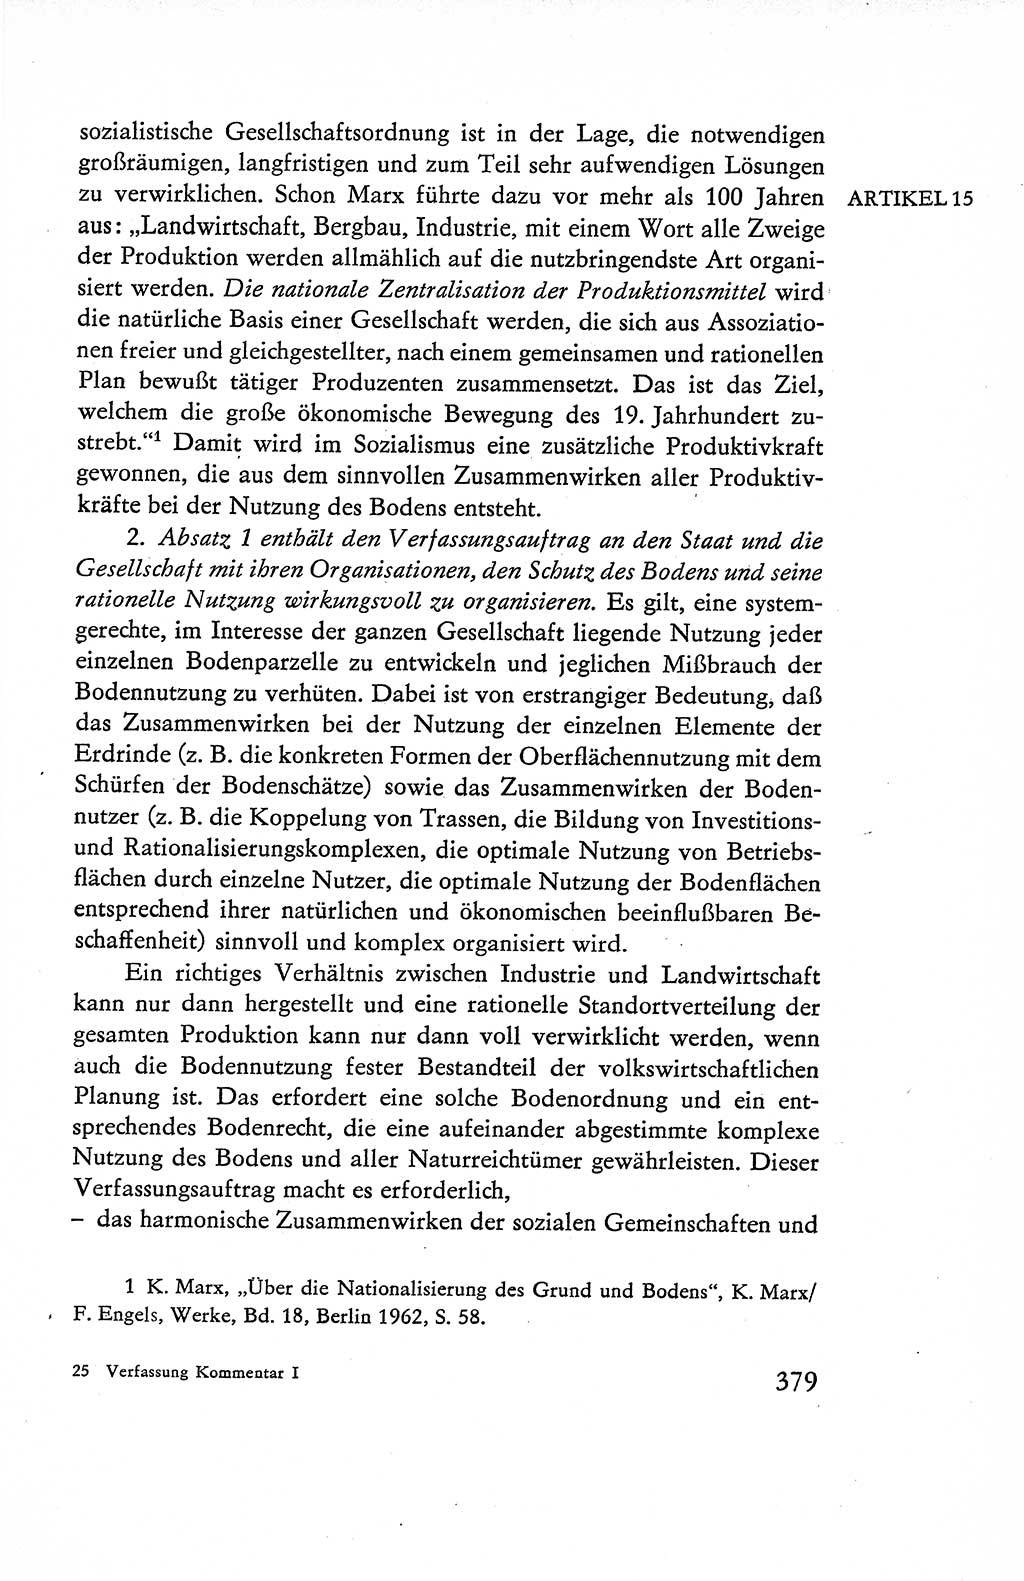 Verfassung der Deutschen Demokratischen Republik (DDR), Dokumente, Kommentar 1969, Band 1, Seite 379 (Verf. DDR Dok. Komm. 1969, Bd. 1, S. 379)